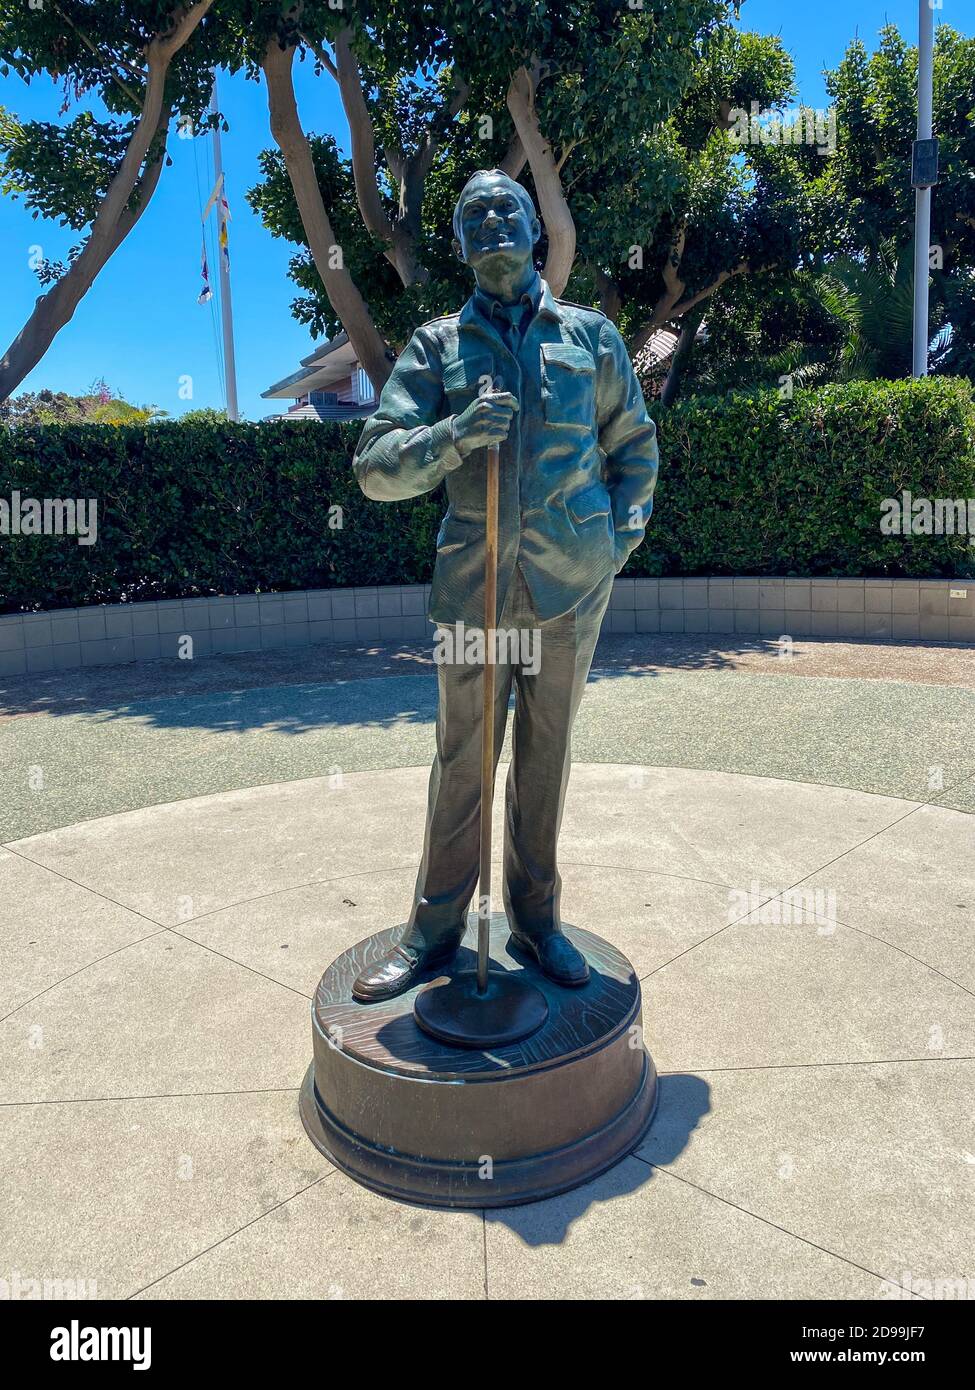 San Diego, CA - 2. Juli 2020: Bronzestatue des Schauspielers/Komikers Bob Hope in einer Gedenkstätte mit dem Titel 'A National Salute to Bob Hope and the Military' von Arti Stockfoto